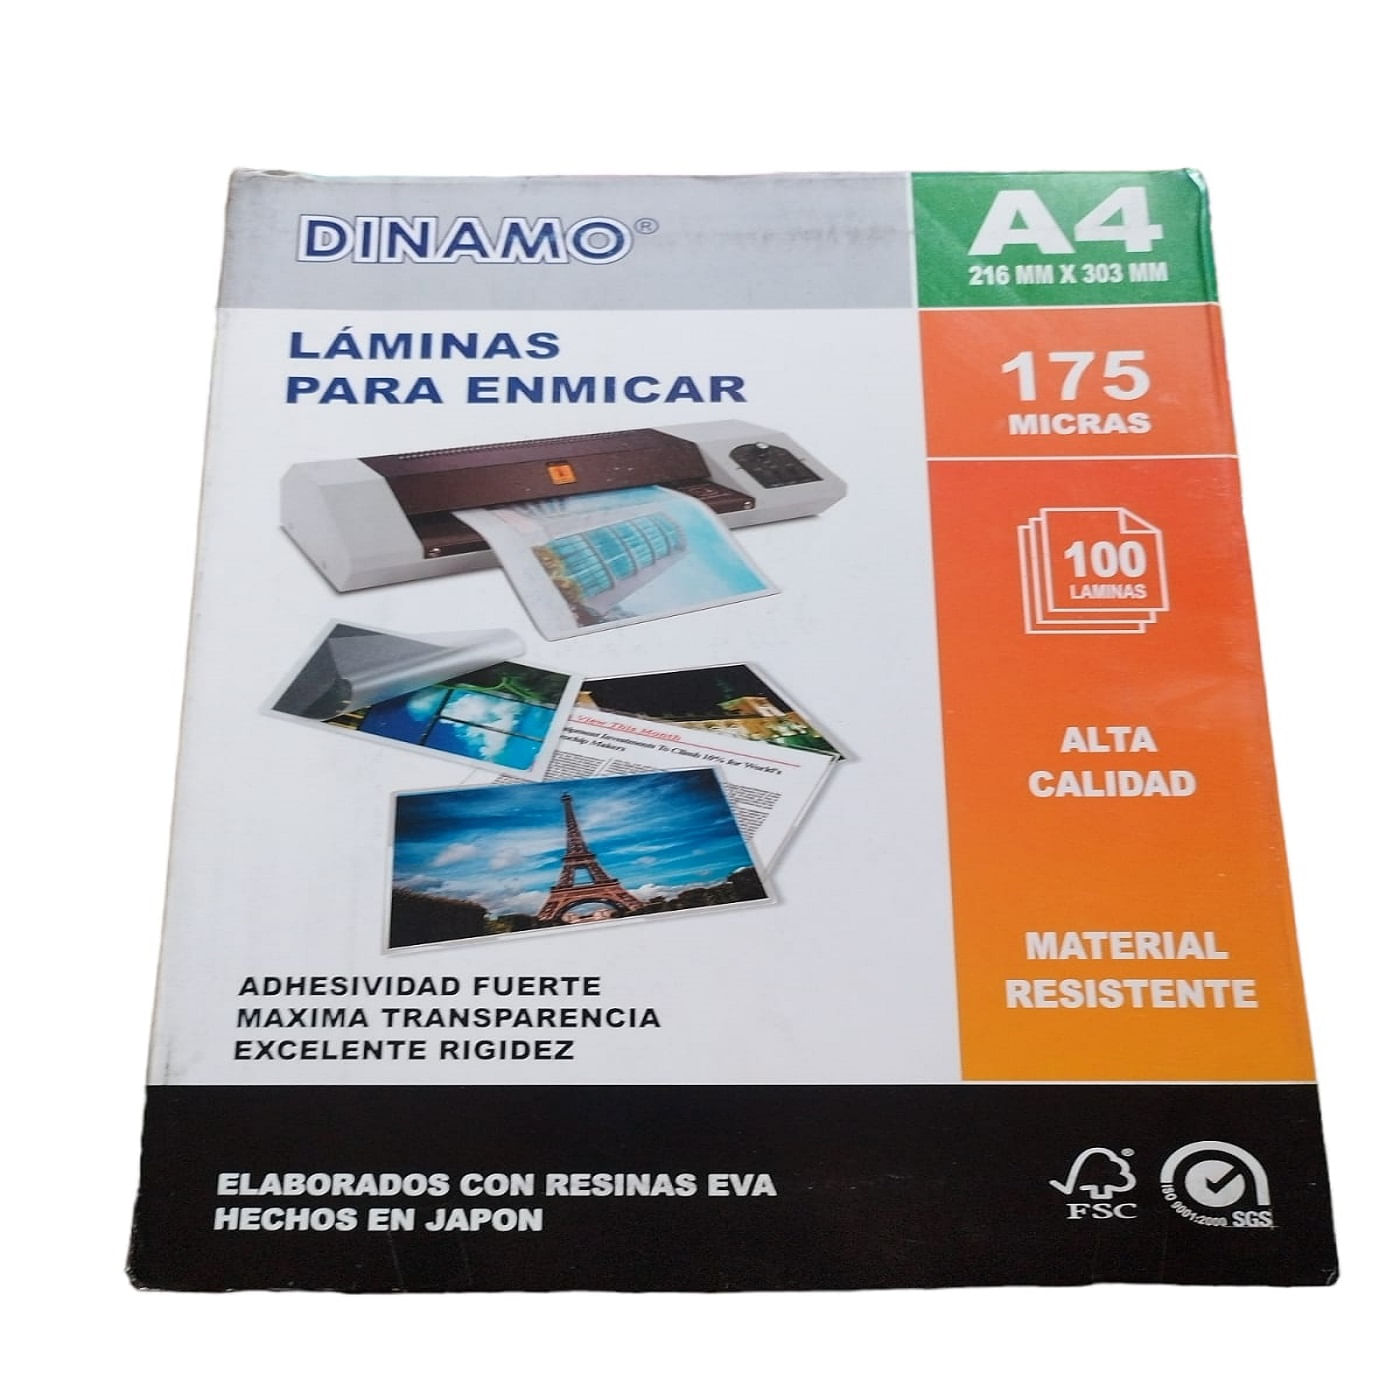 Laminas Para Enmicar A4 DINAMO - 175 micras - Paquete X100 und